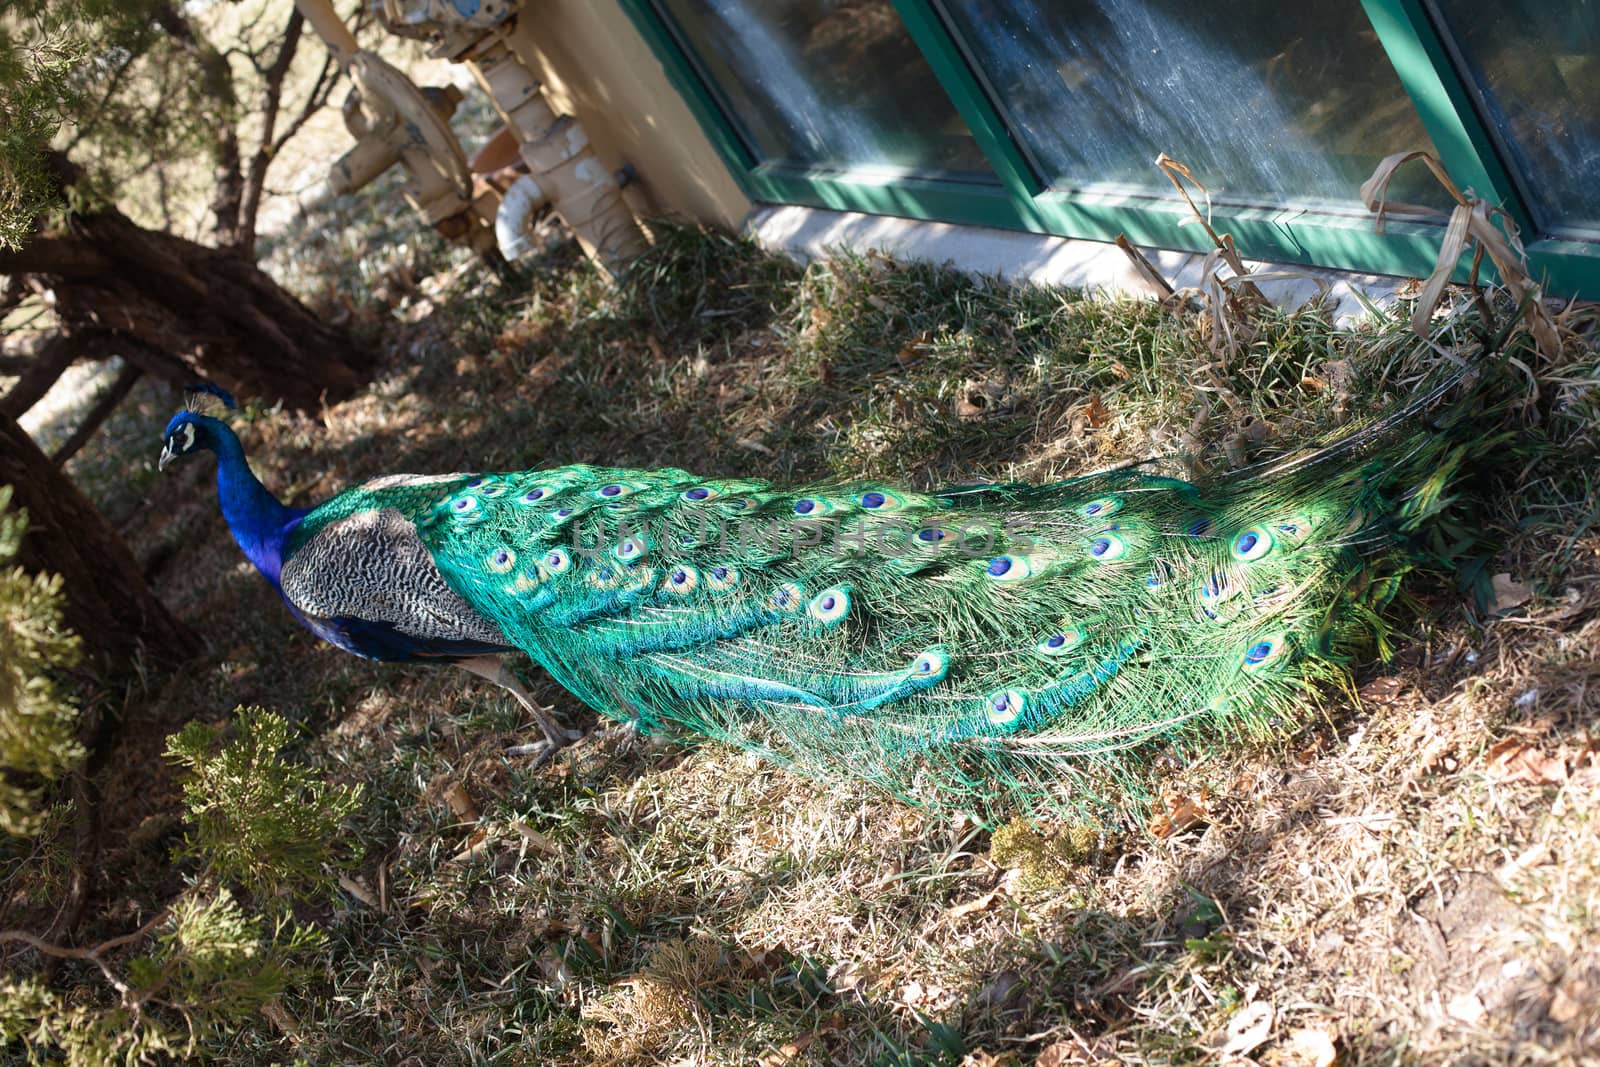 peacock by foaloce